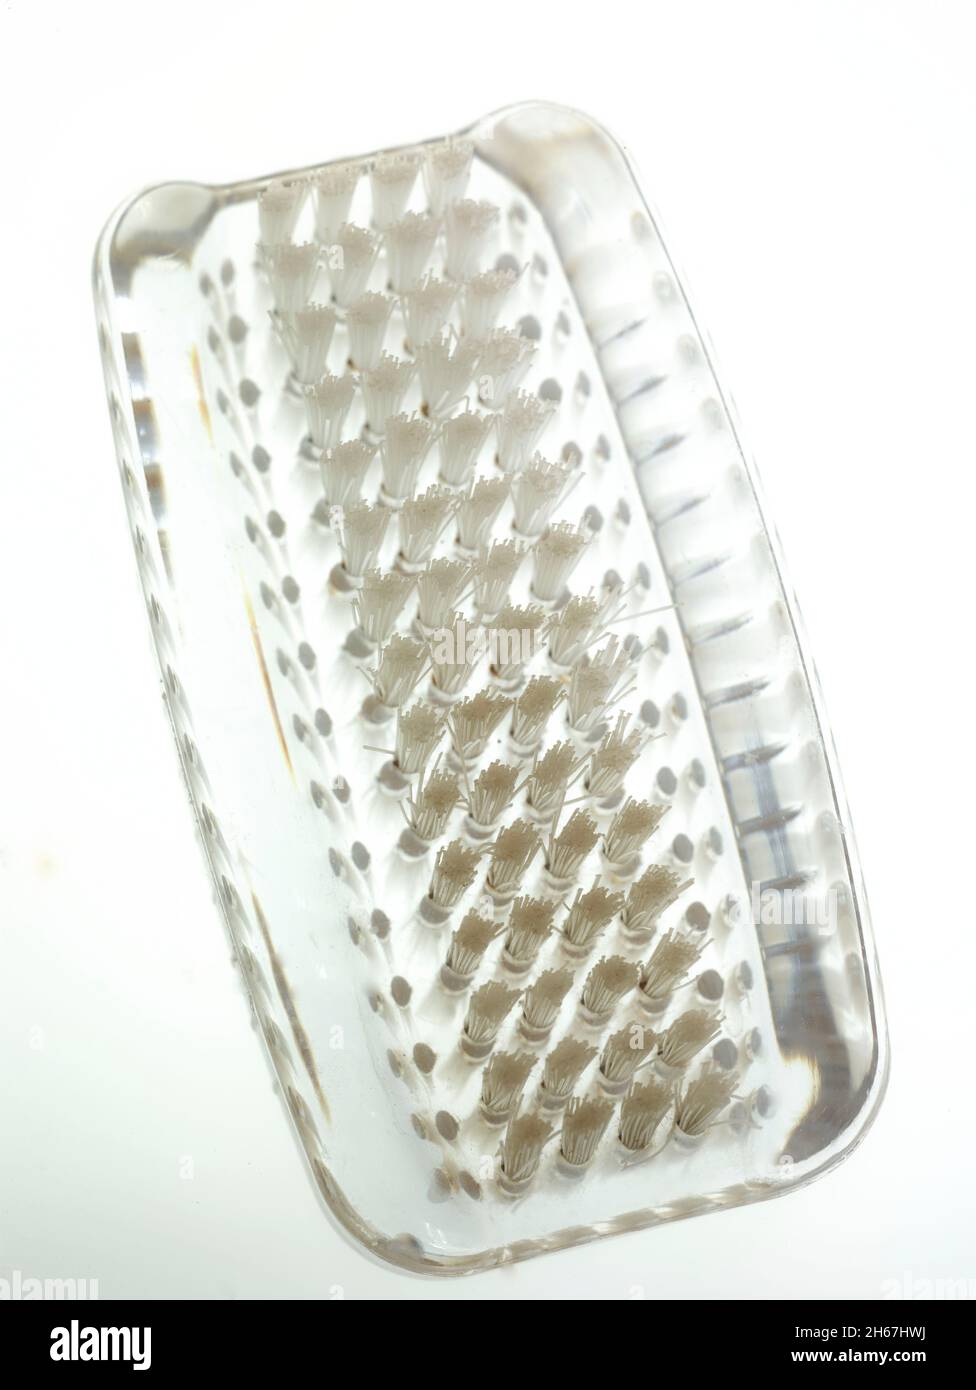 Very close-up still life of nailbrush, Coronavirus handwashing regime Stock Photo